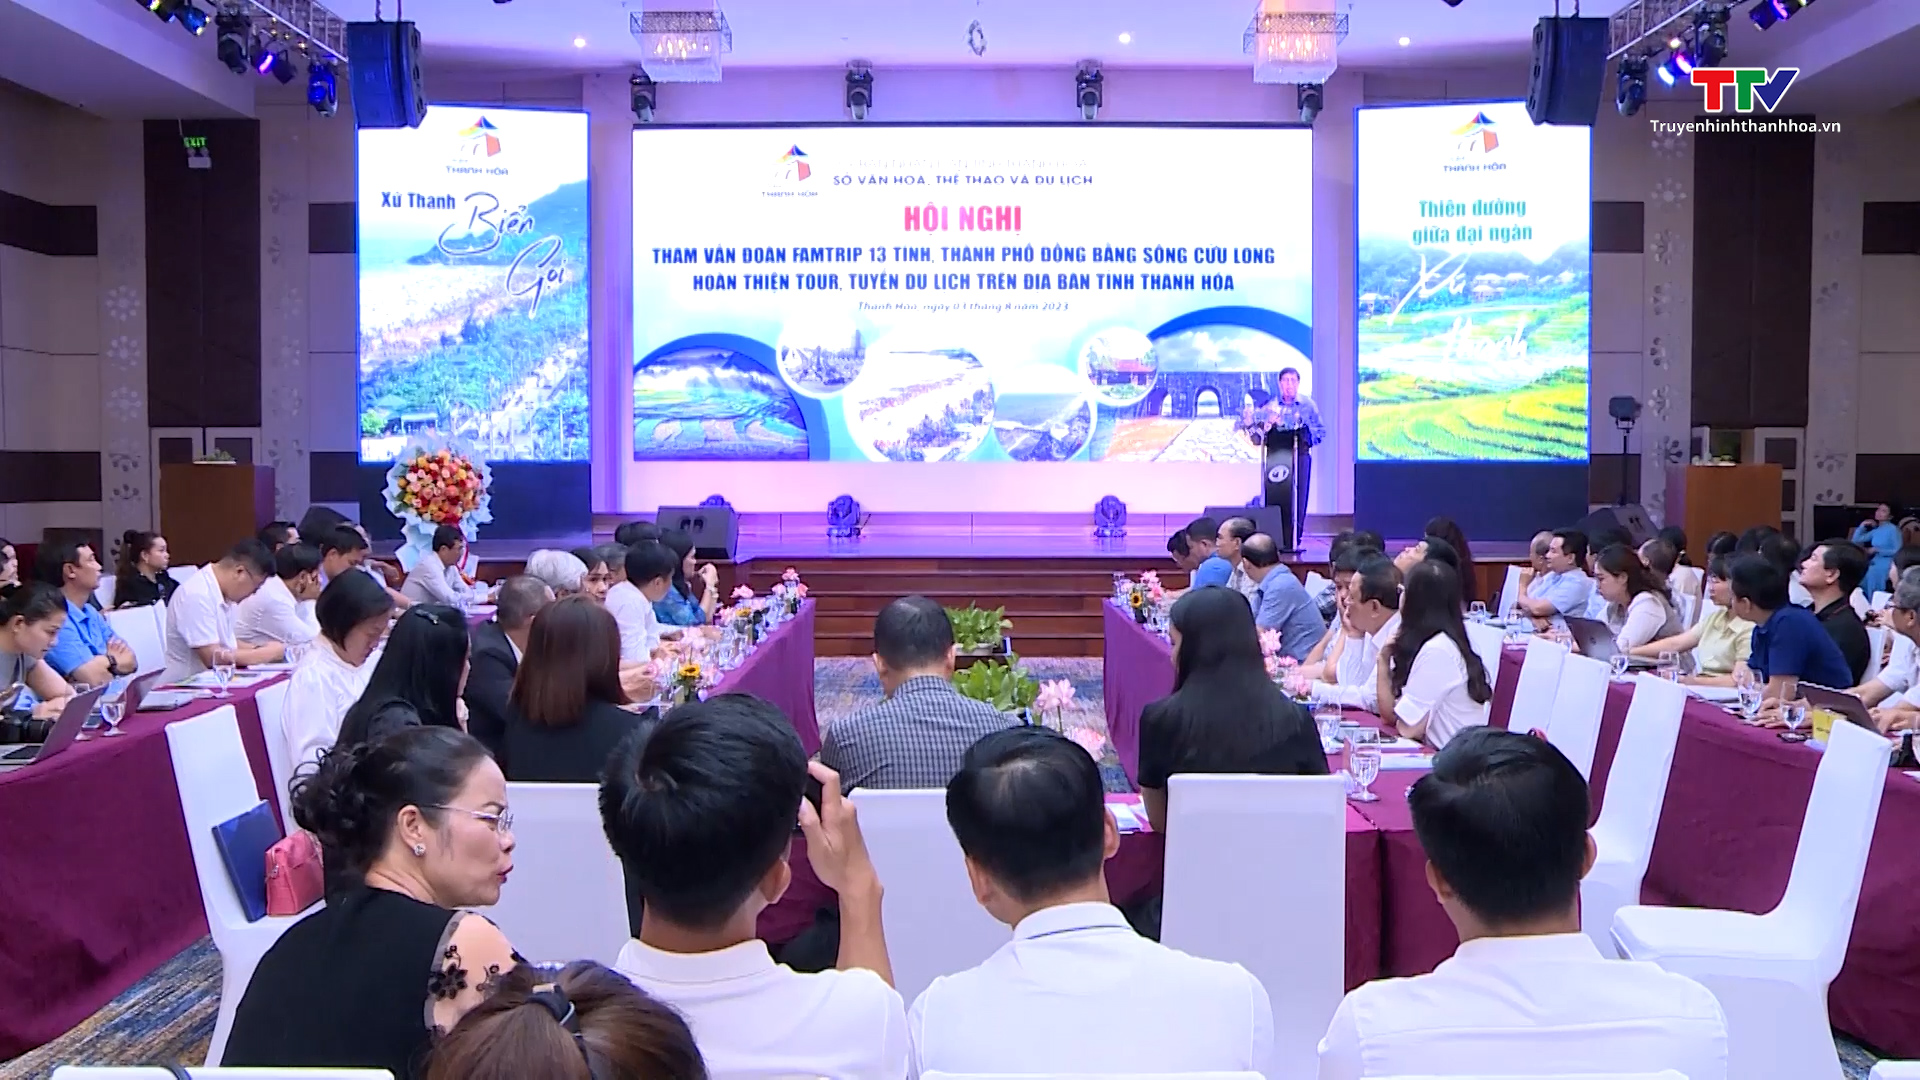 Hội nghị tham vấn ý kiến hoàn thiện chương trình và dịch vụ tour du lịch trên địa bàn tỉnh Thanh Hoá - Ảnh 2.